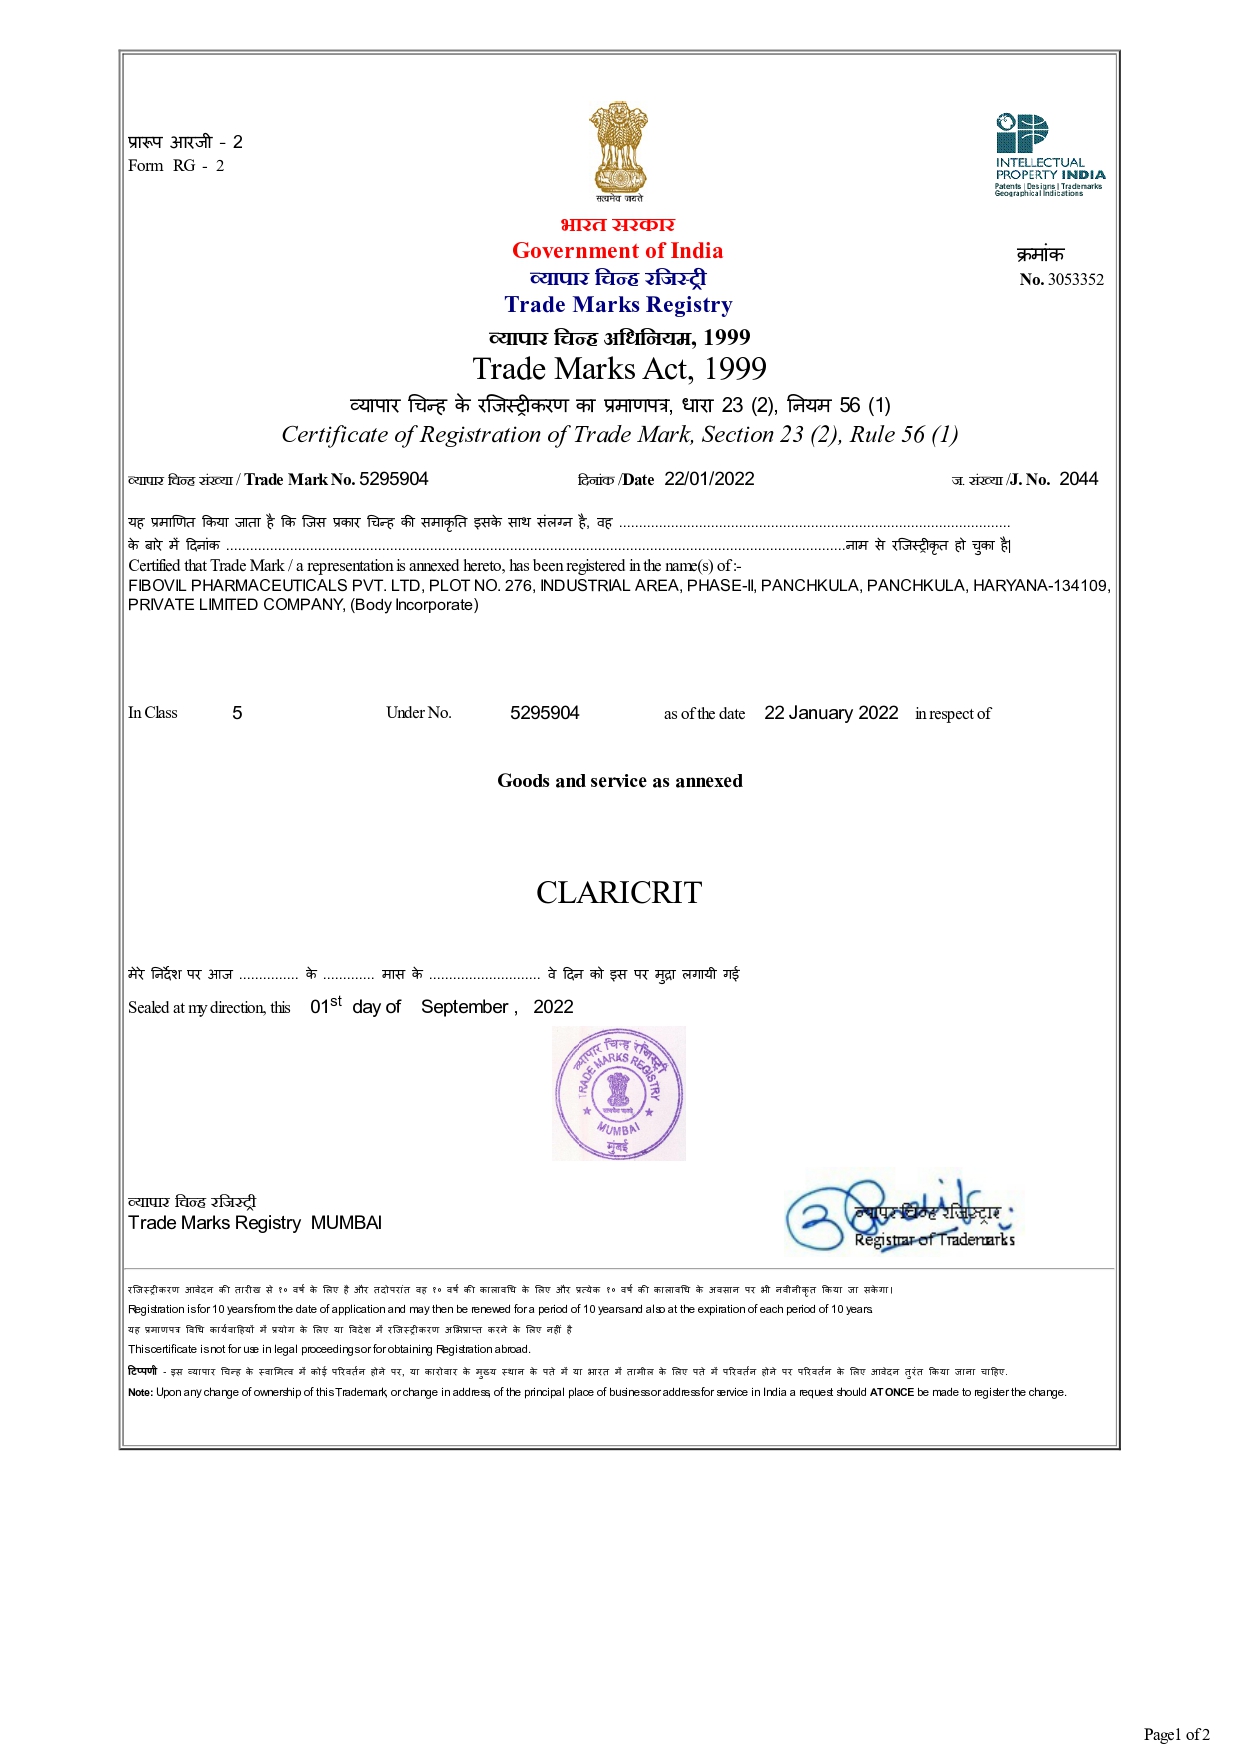 Registered Certificate of CLARICRIT